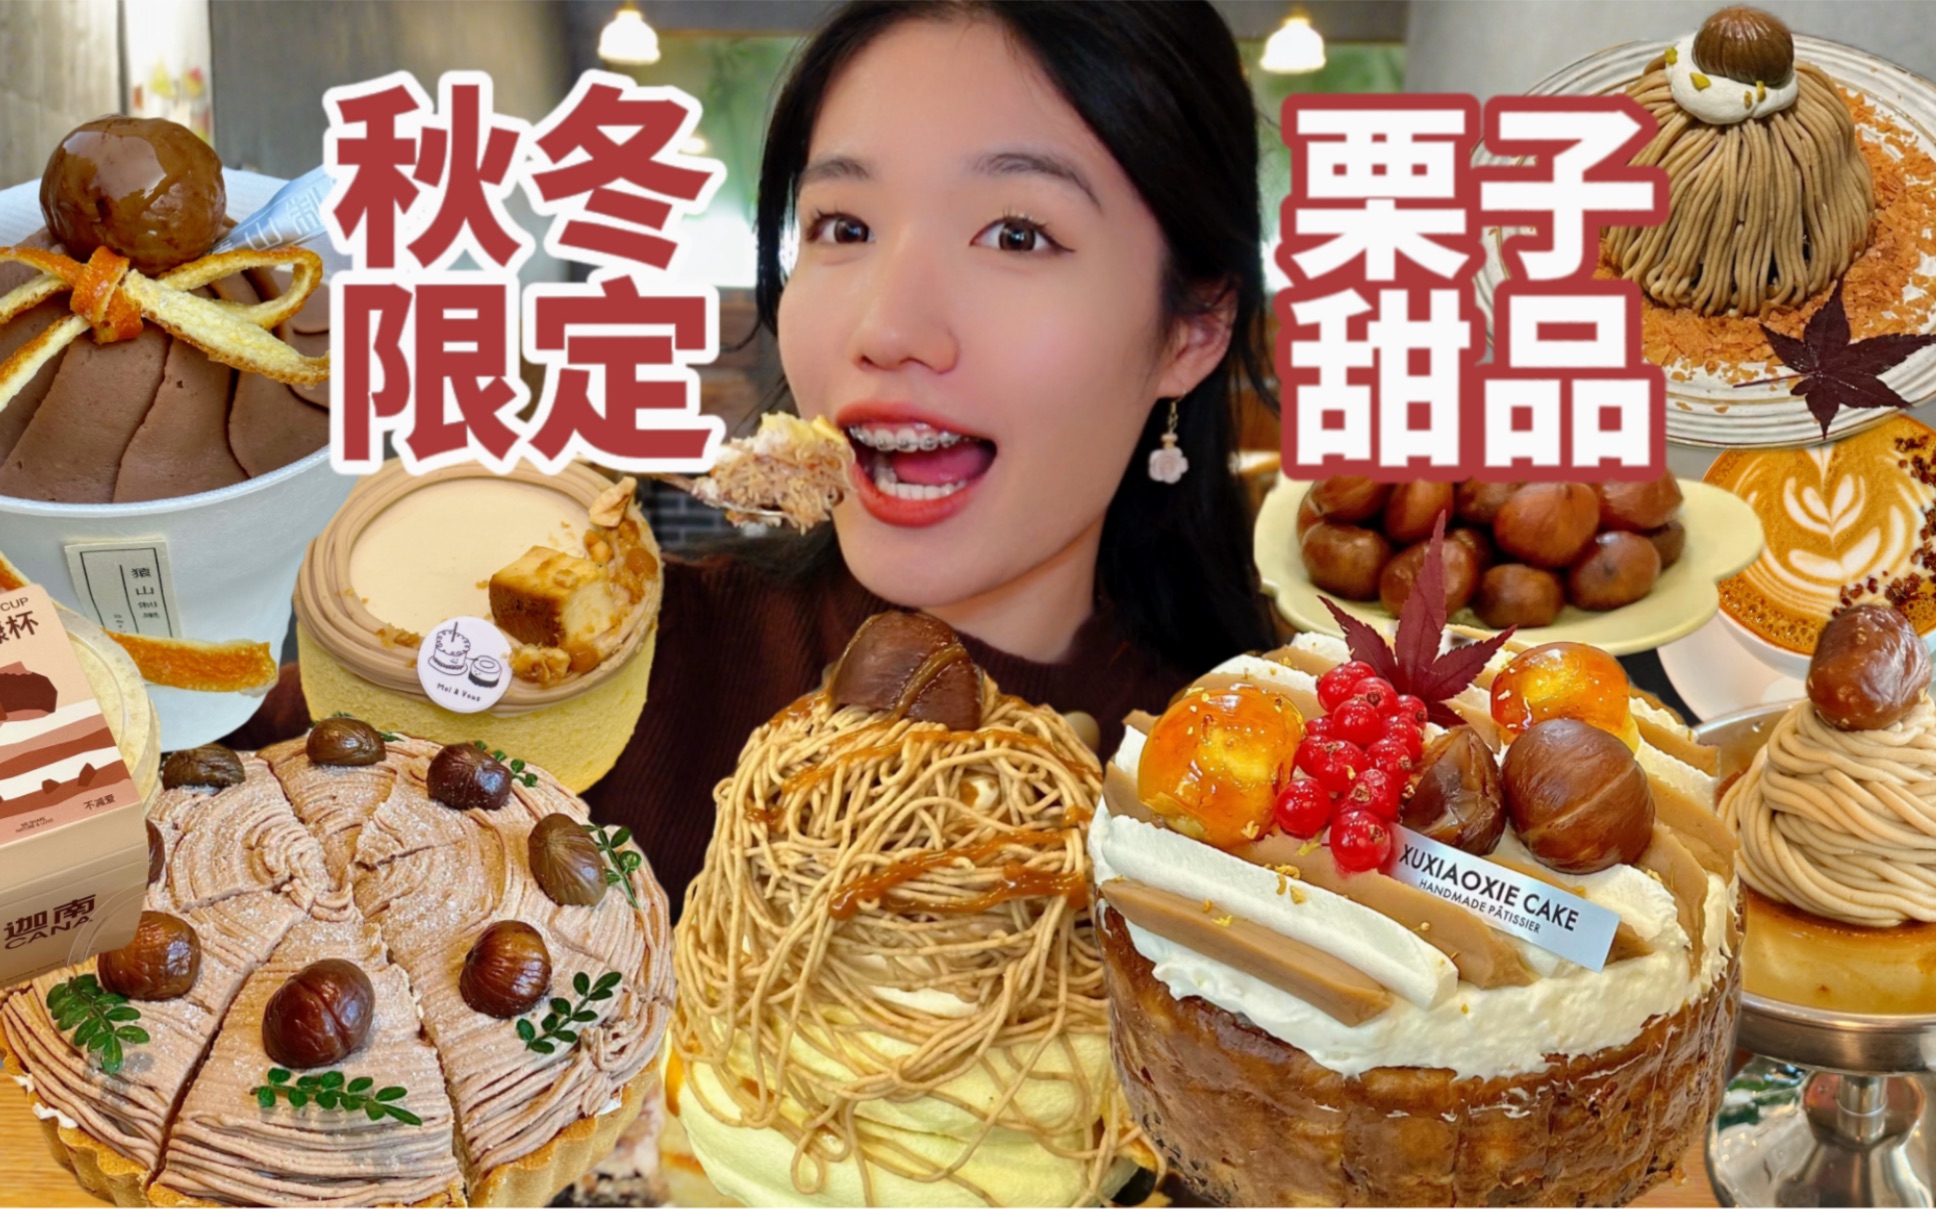 【杭州栗子甜品特辑】杭州的秋天总要吃一口栗子蛋糕吧！唯一的缺点就是不能邮寄…杭州的小甜甜果然卷！吃到了人生的栗子蛋糕！